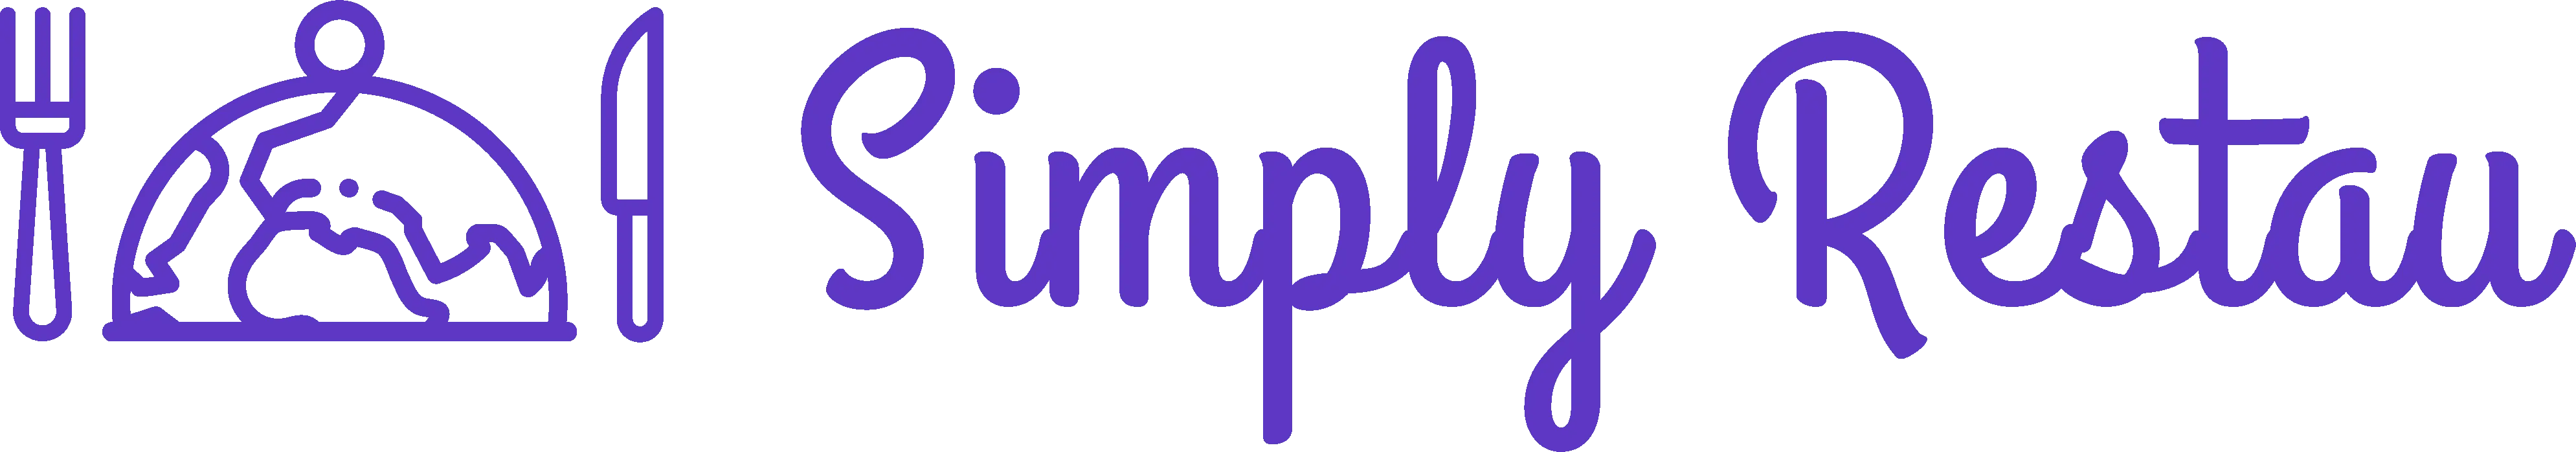 Logo SimplyRestau